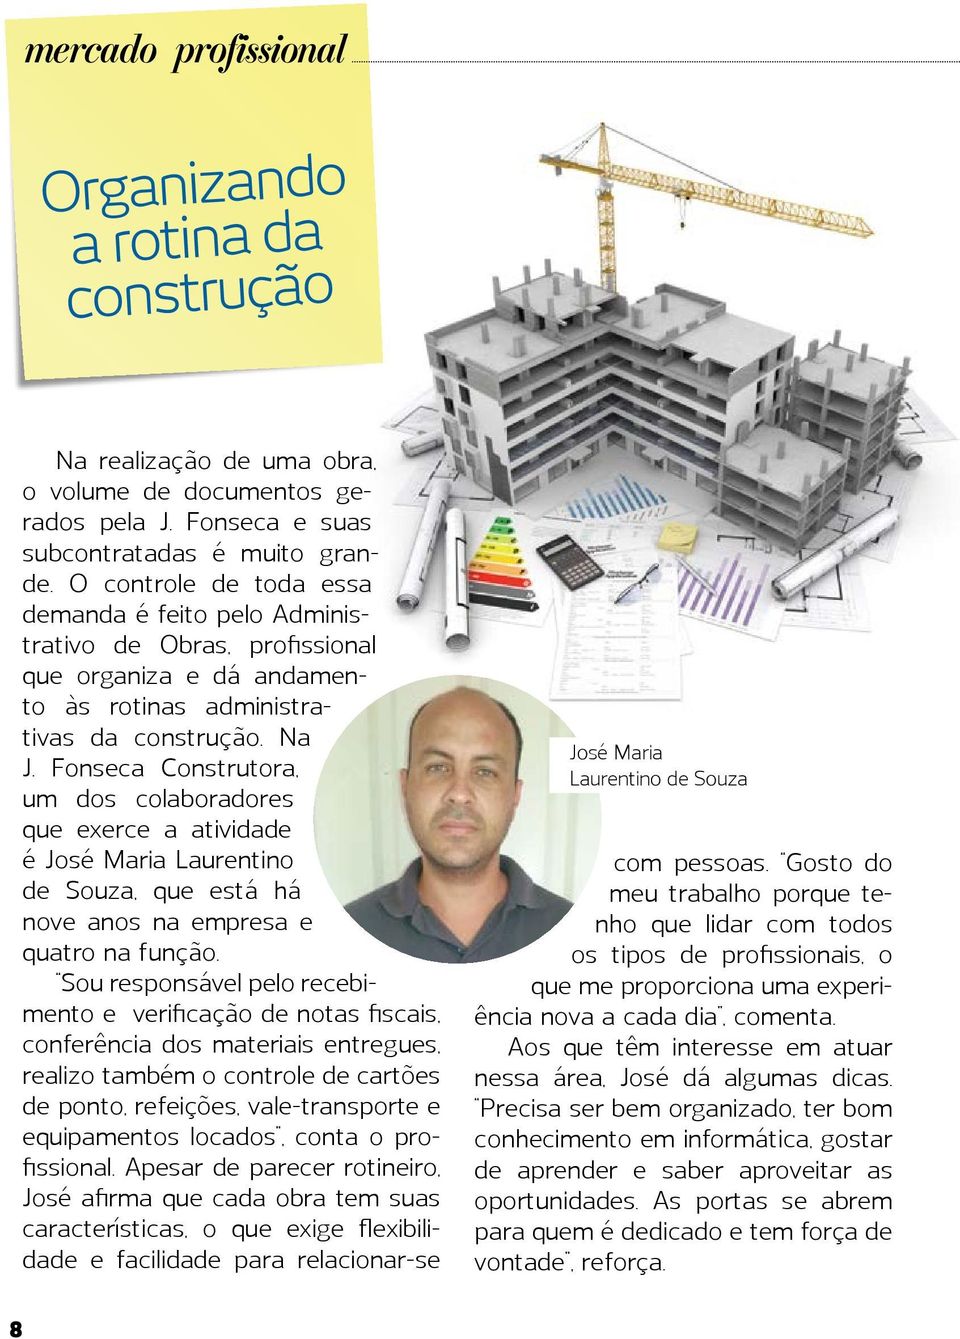 Fonseca Construtora, um dos colaboradores que exerce a atividade é José Maria Laurentino de Souza, que está há nove anos na empresa e quatro na função.